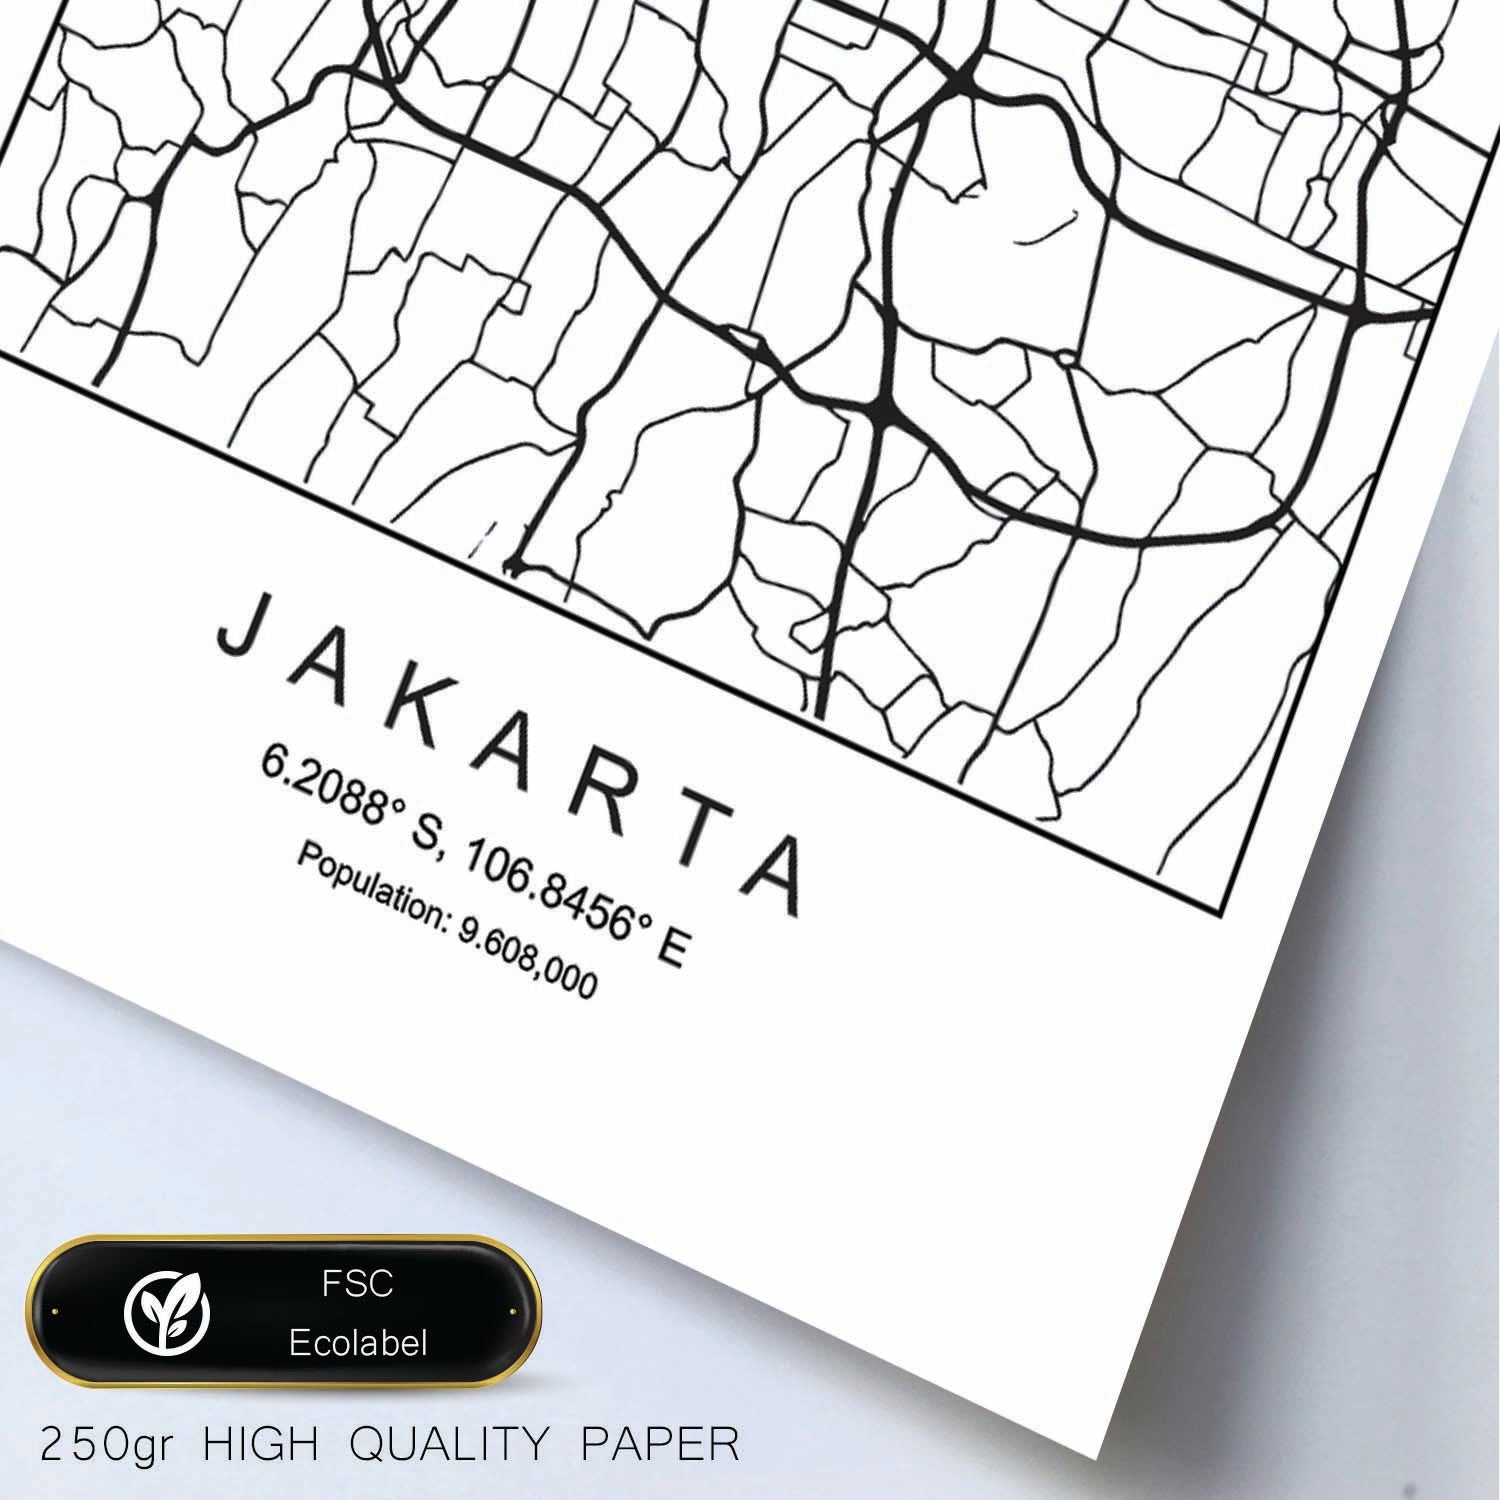 Lámina mapa de la ciudad Jakarta estilo nordico en blanco y negro.-Artwork-Nacnic-Nacnic Estudio SL